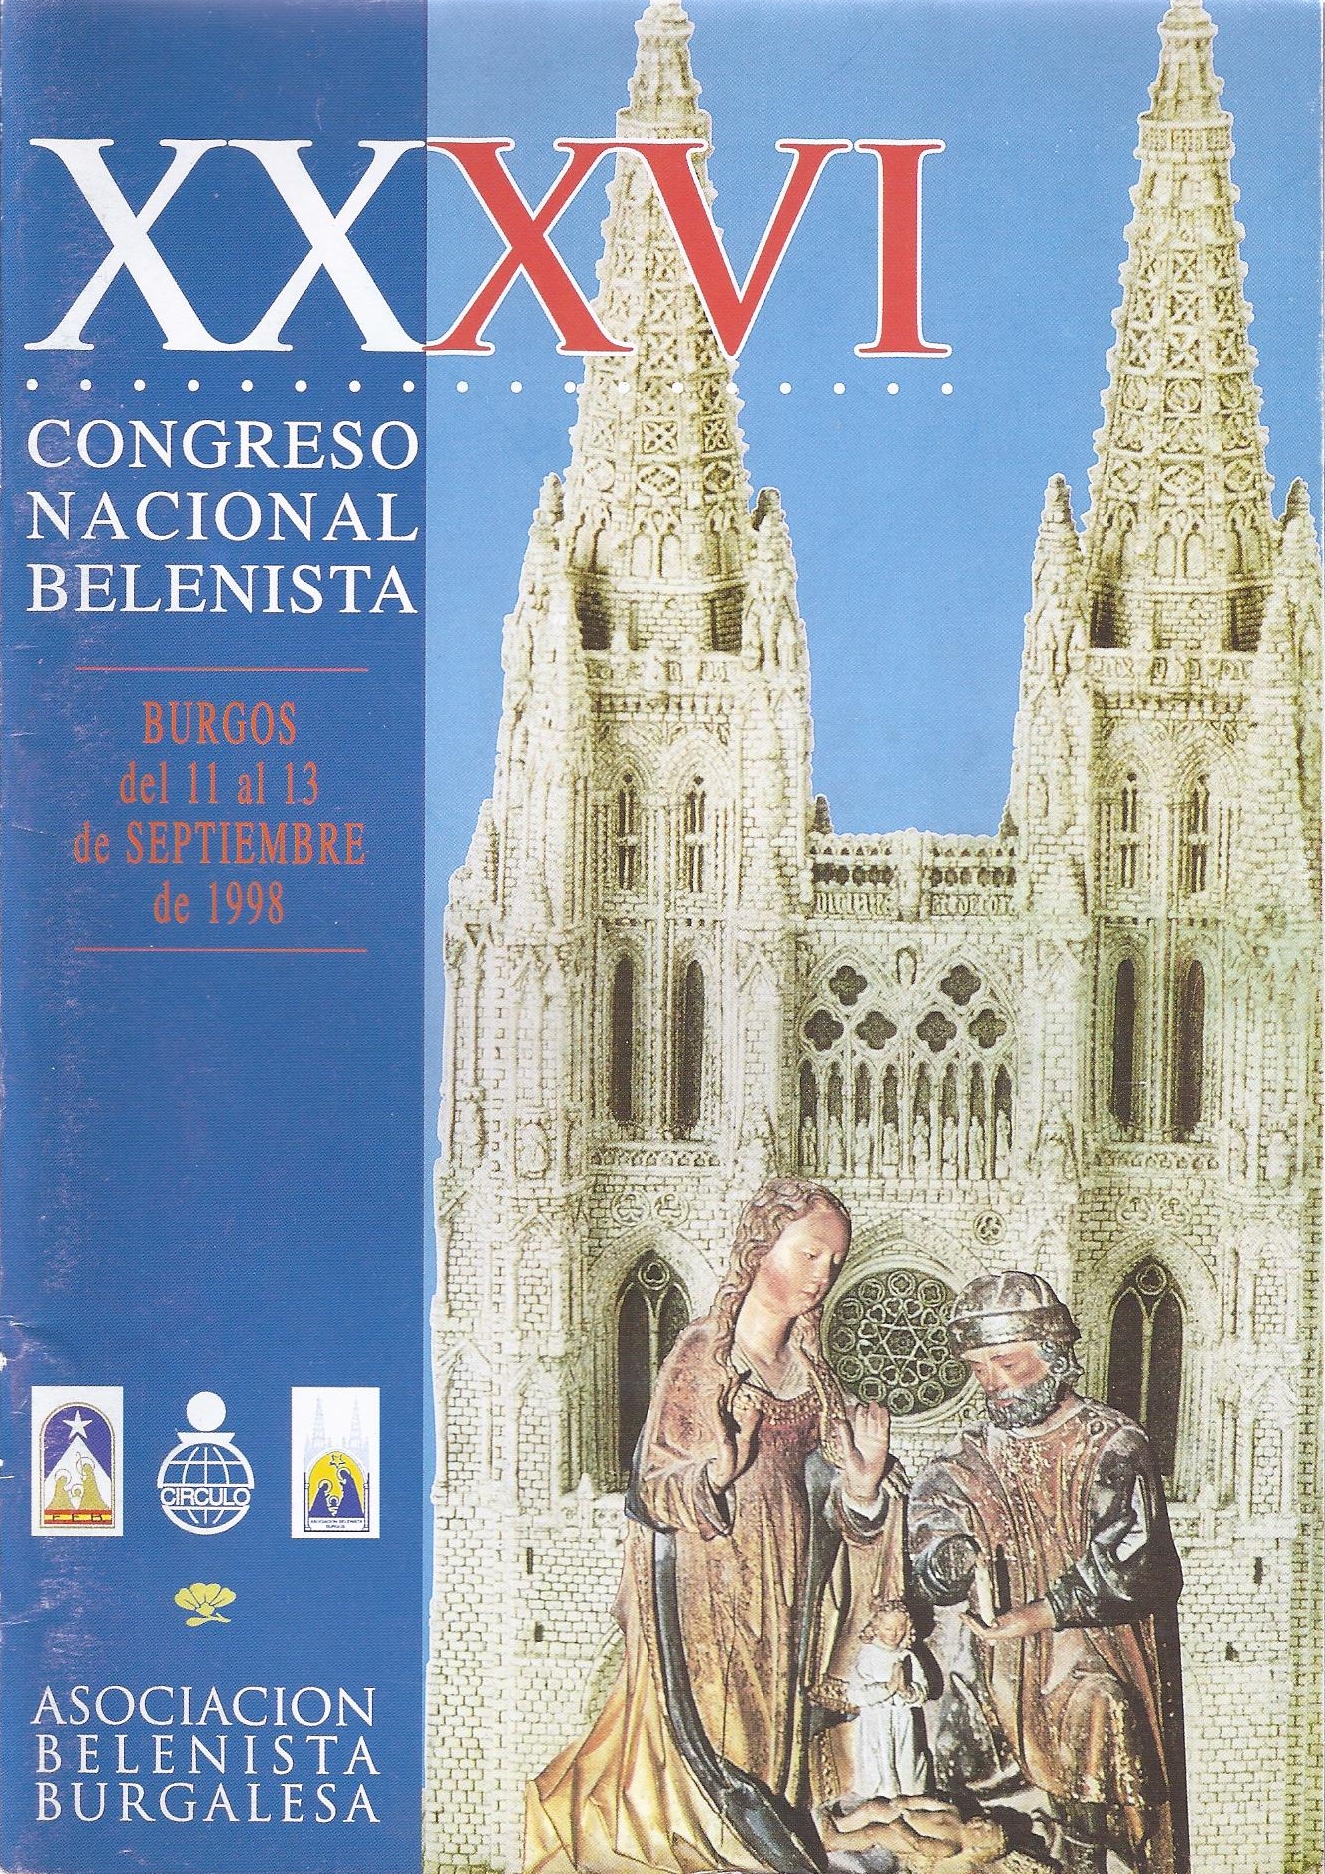 Cartel del XXXVI Congreso Nacional Belenista, organizado por la Asociación Belenista Burgalesa y celebrado ente el 11 y el 13 de septiembre de 1998